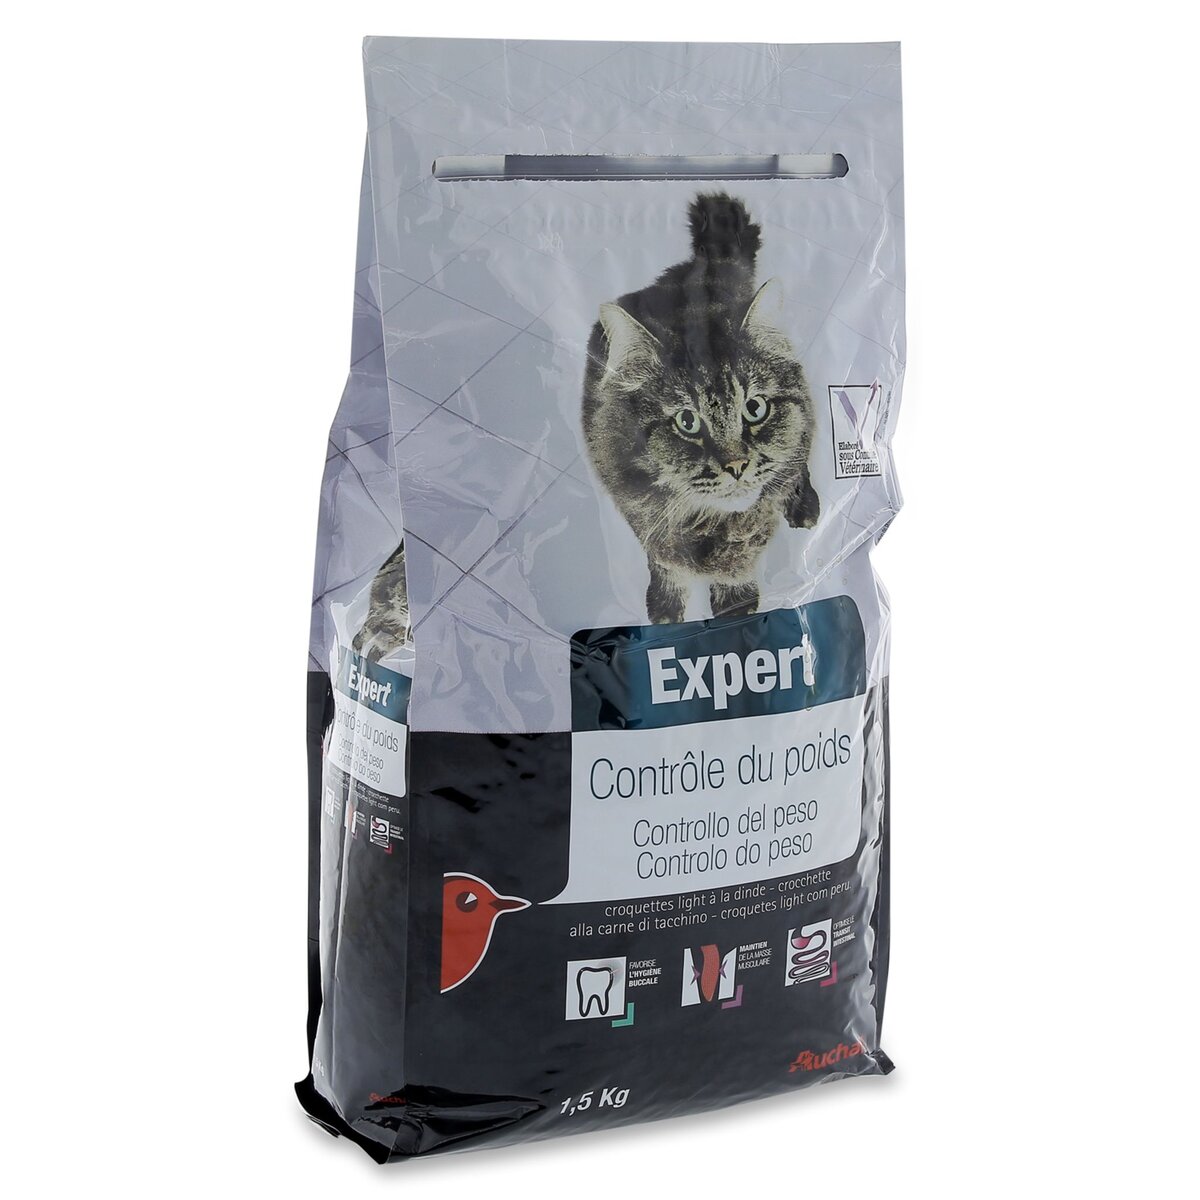 AUCHAN Auchan Expert croquettes à la dinde contrôle de poids pour chat 1,5kg 1,5kg